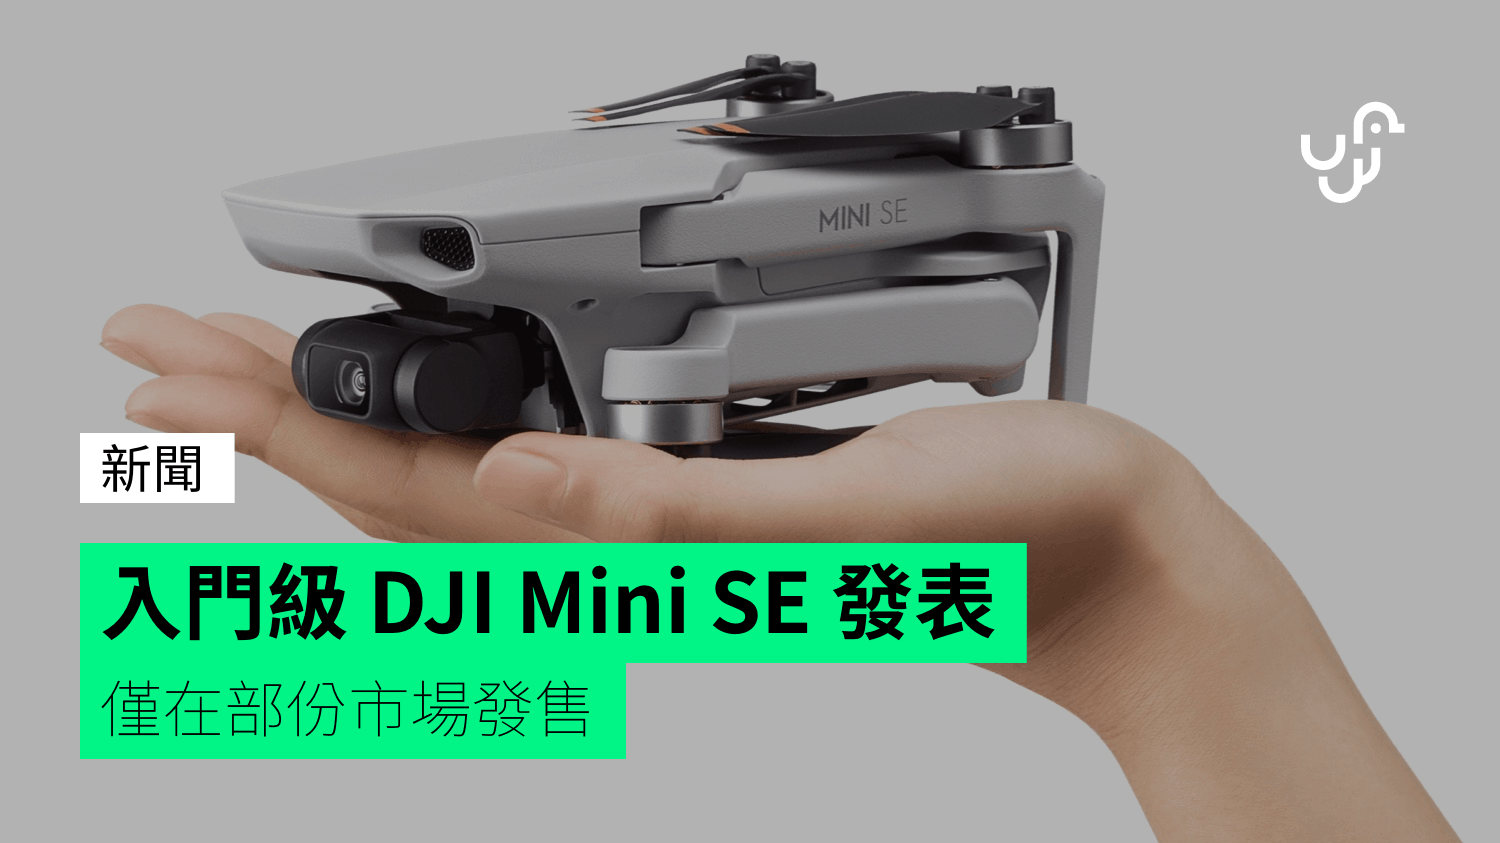 入門級 DJI Mini SE 發表 僅在部份市場發售 - 香港 unwire.hk